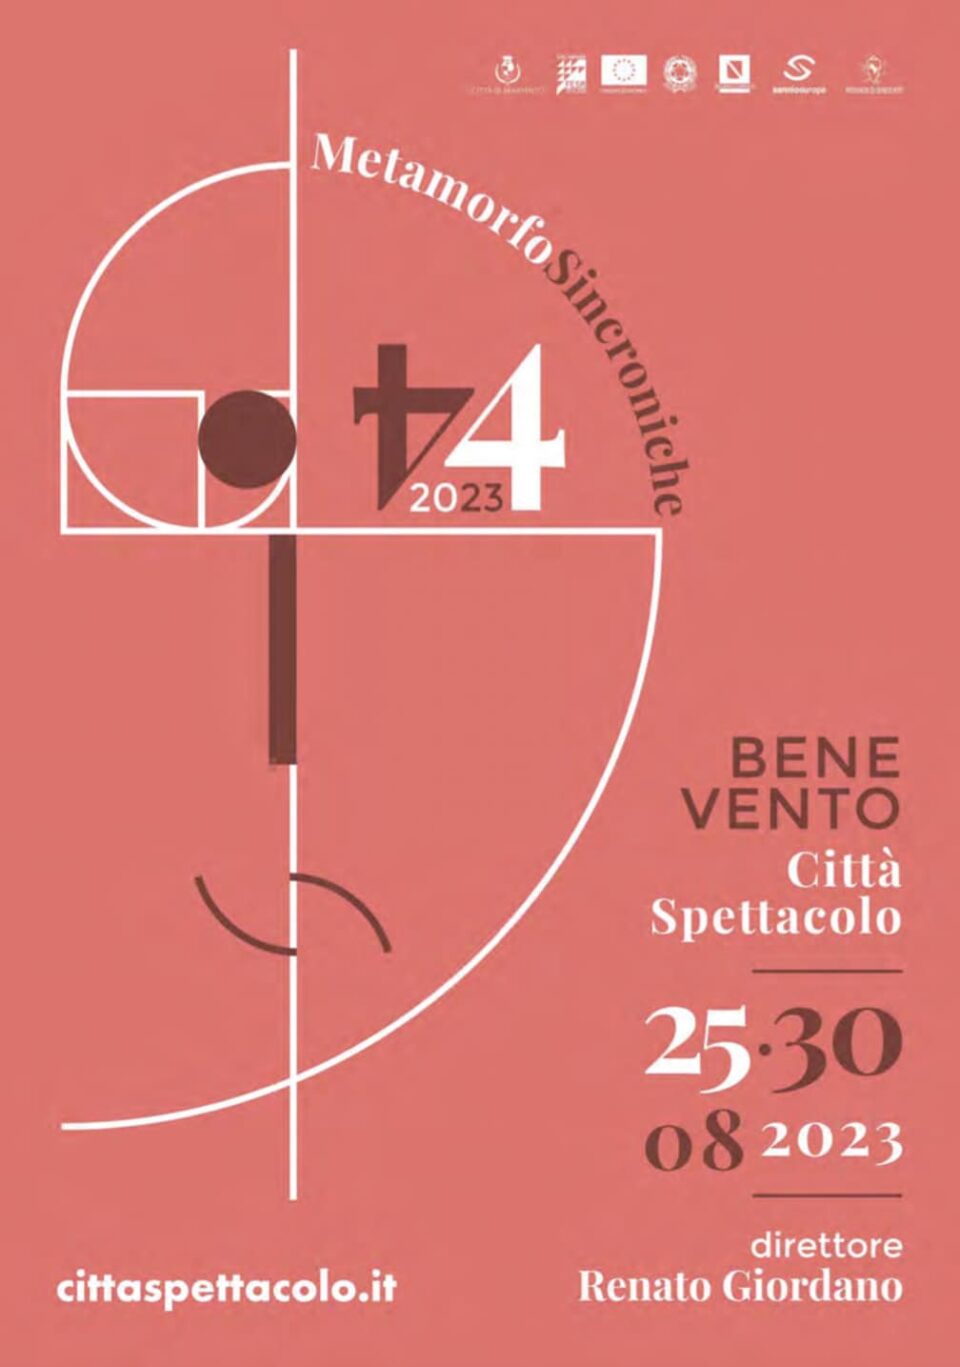 Benevento Città Spettacolo 2023